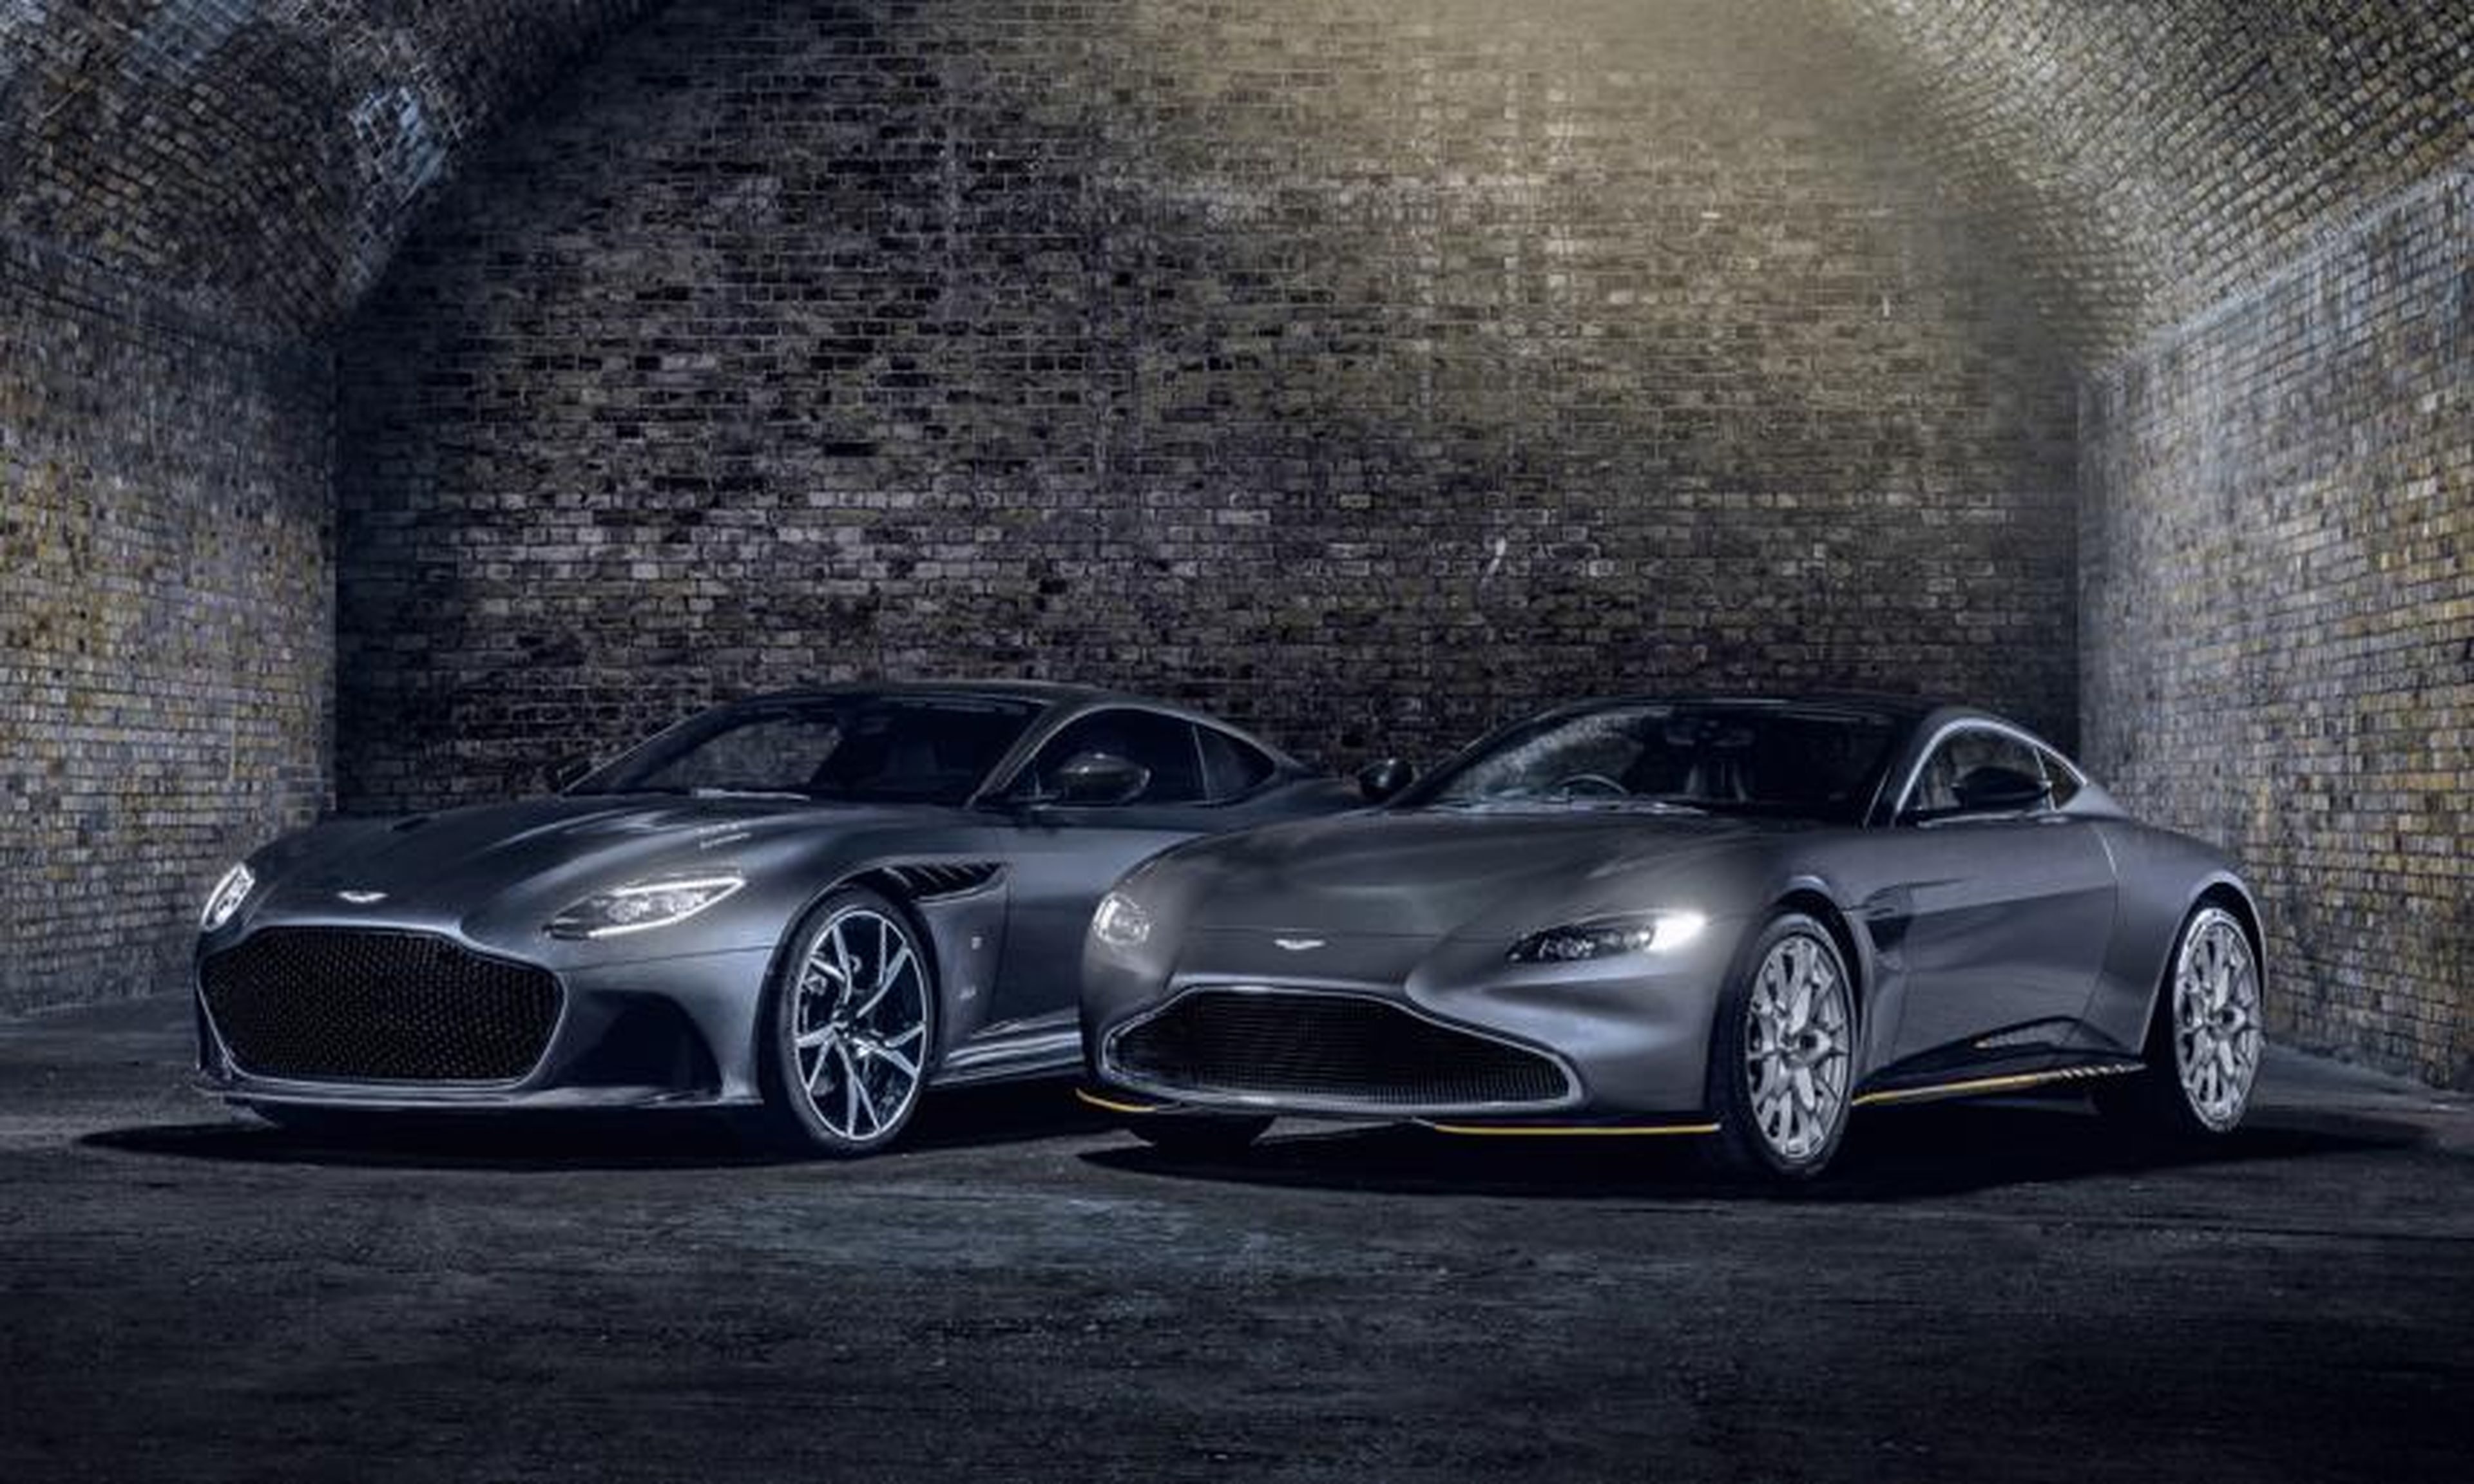 Los espectaculares coches de James Bond en 'No time to die'